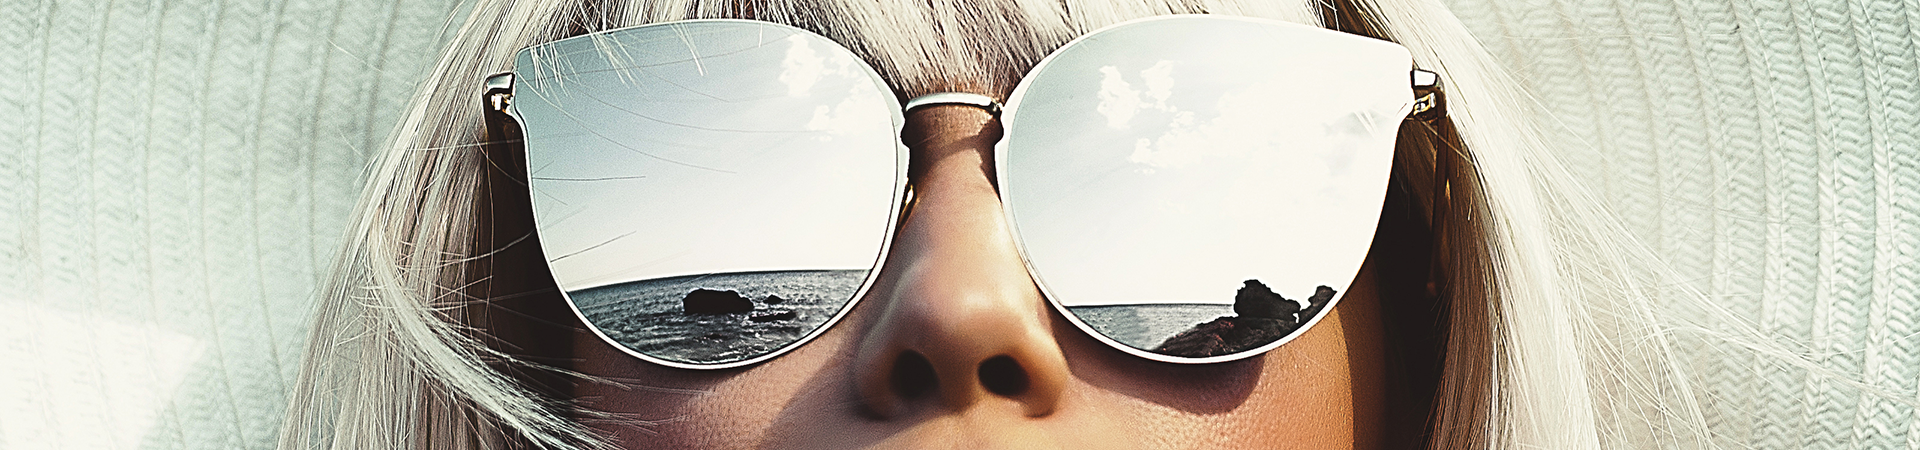 Solbrillemode | Hør om solbriller hos Rexbriller Helsingør